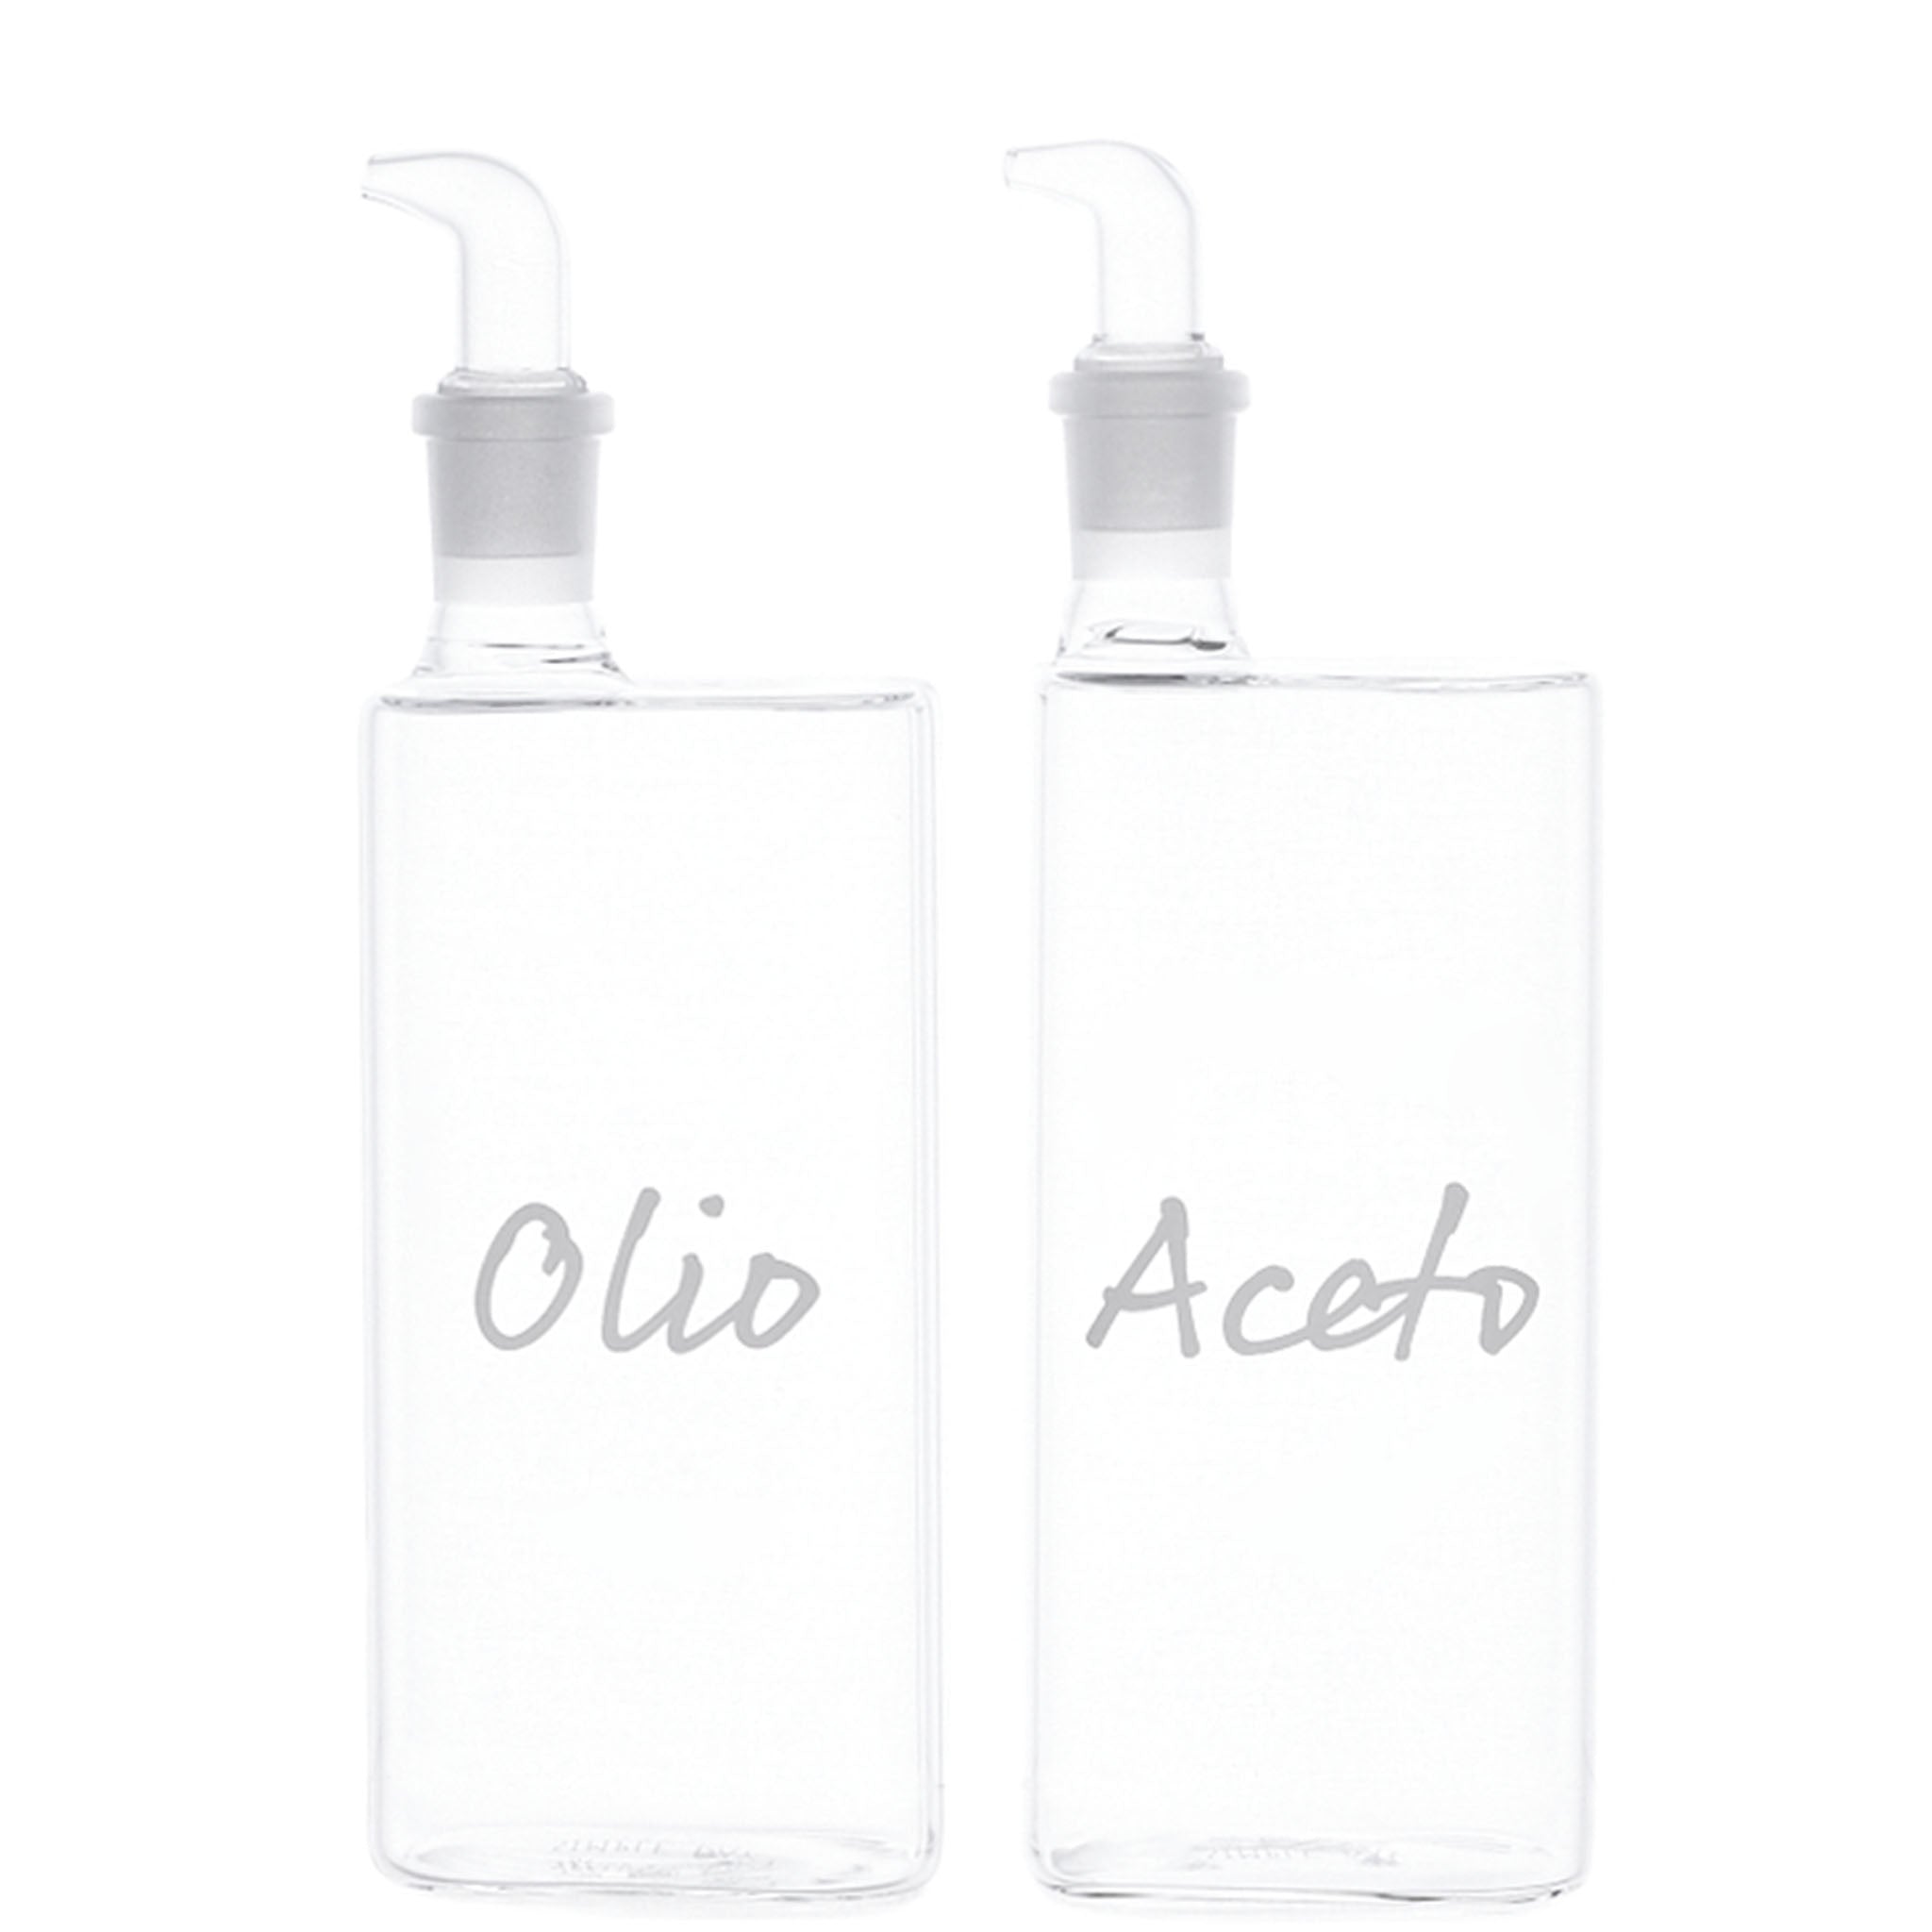 Flaschen 2er Set "Olio" - "Aceto" 2x400ml